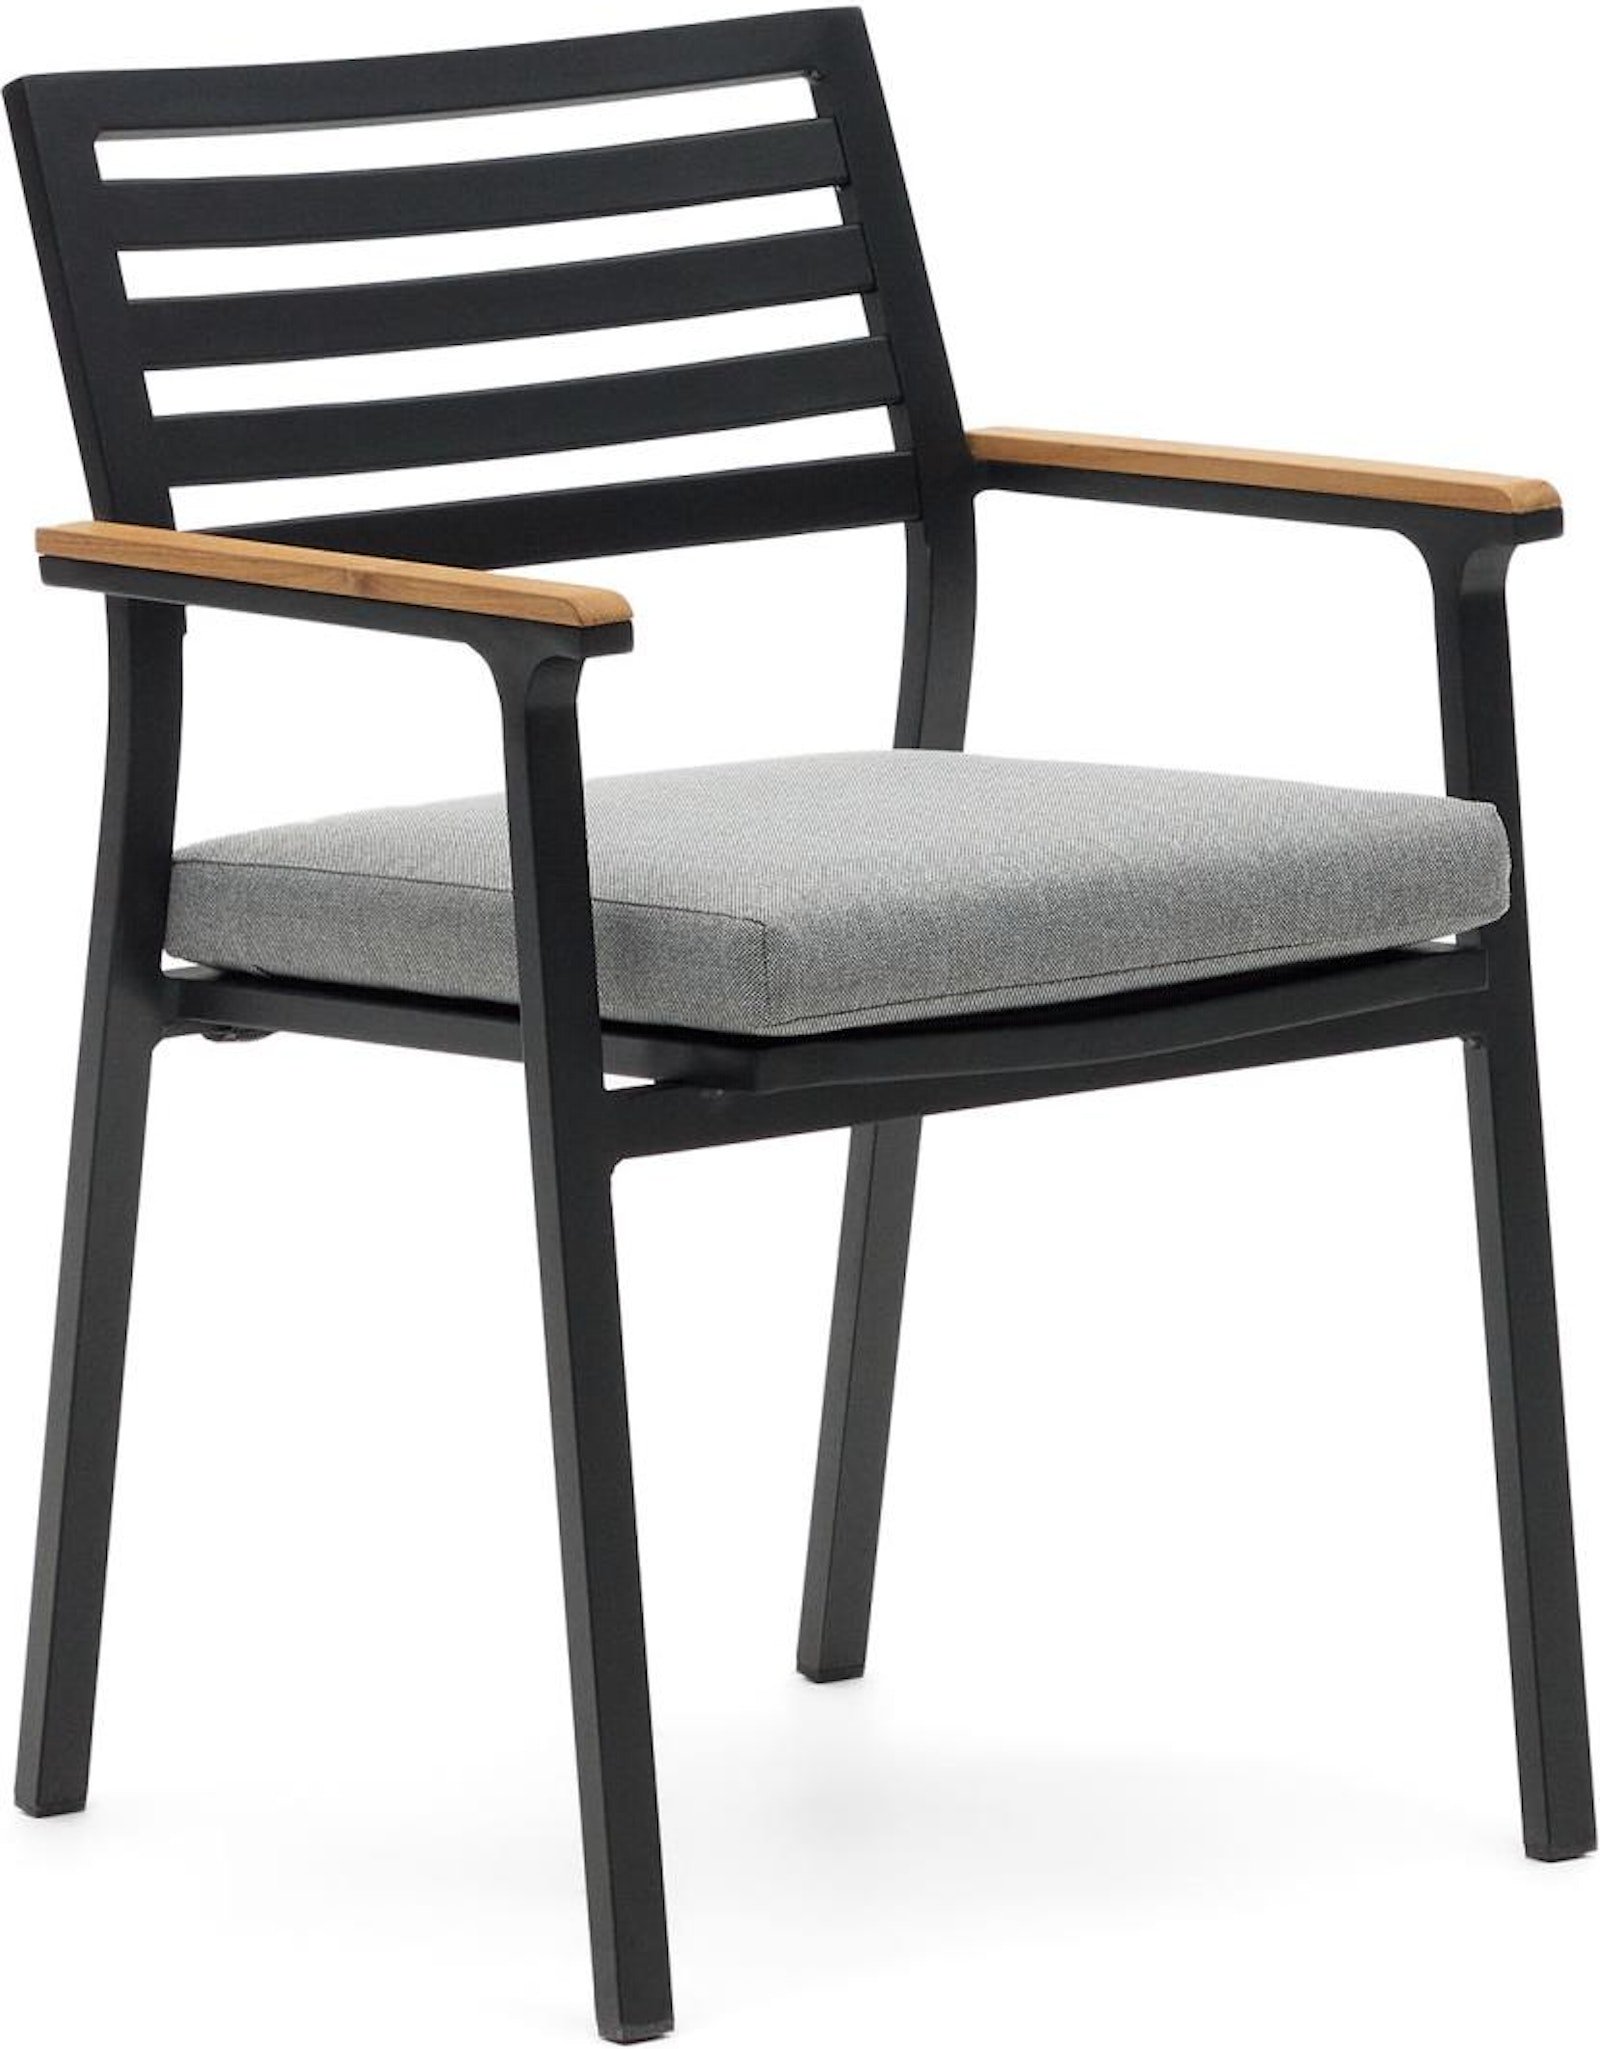 Bona, Udendørs stol, nordisk, moderne, metal by Laforma (H: 83 cm. x B: 57 cm. x L: 55 cm., Sort/Natur)